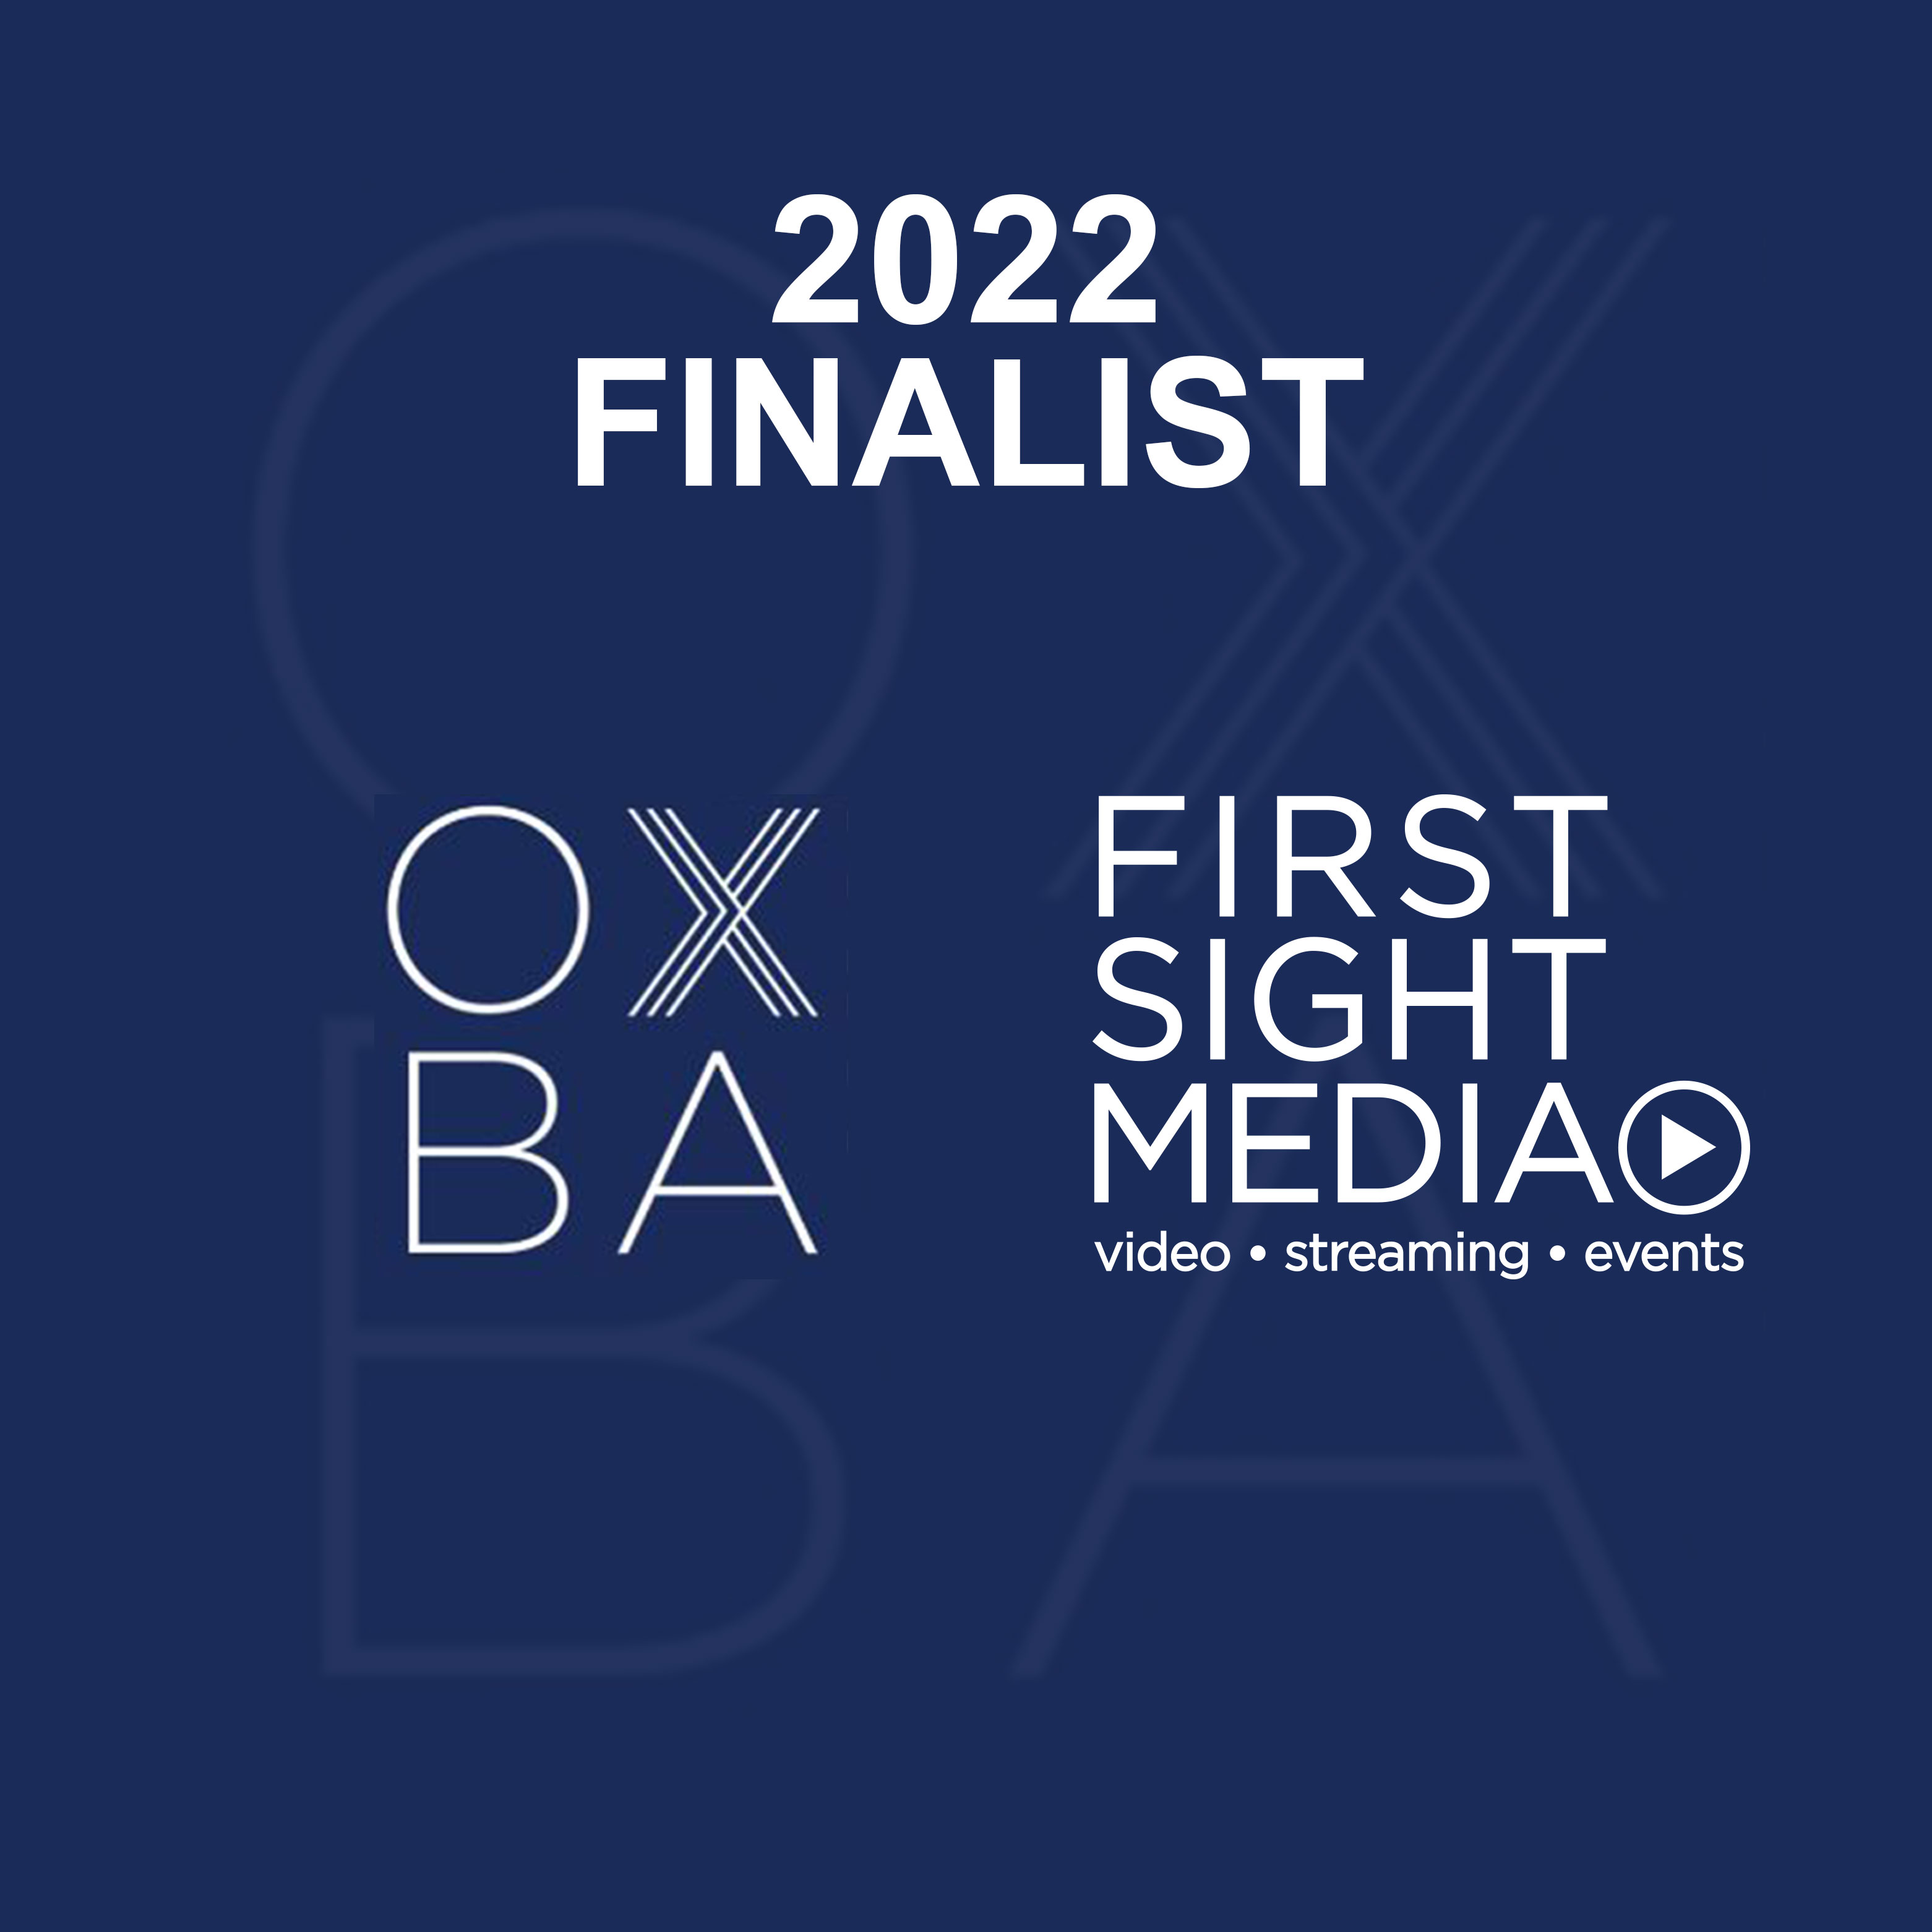 First Sight Media OXBA Finalist 